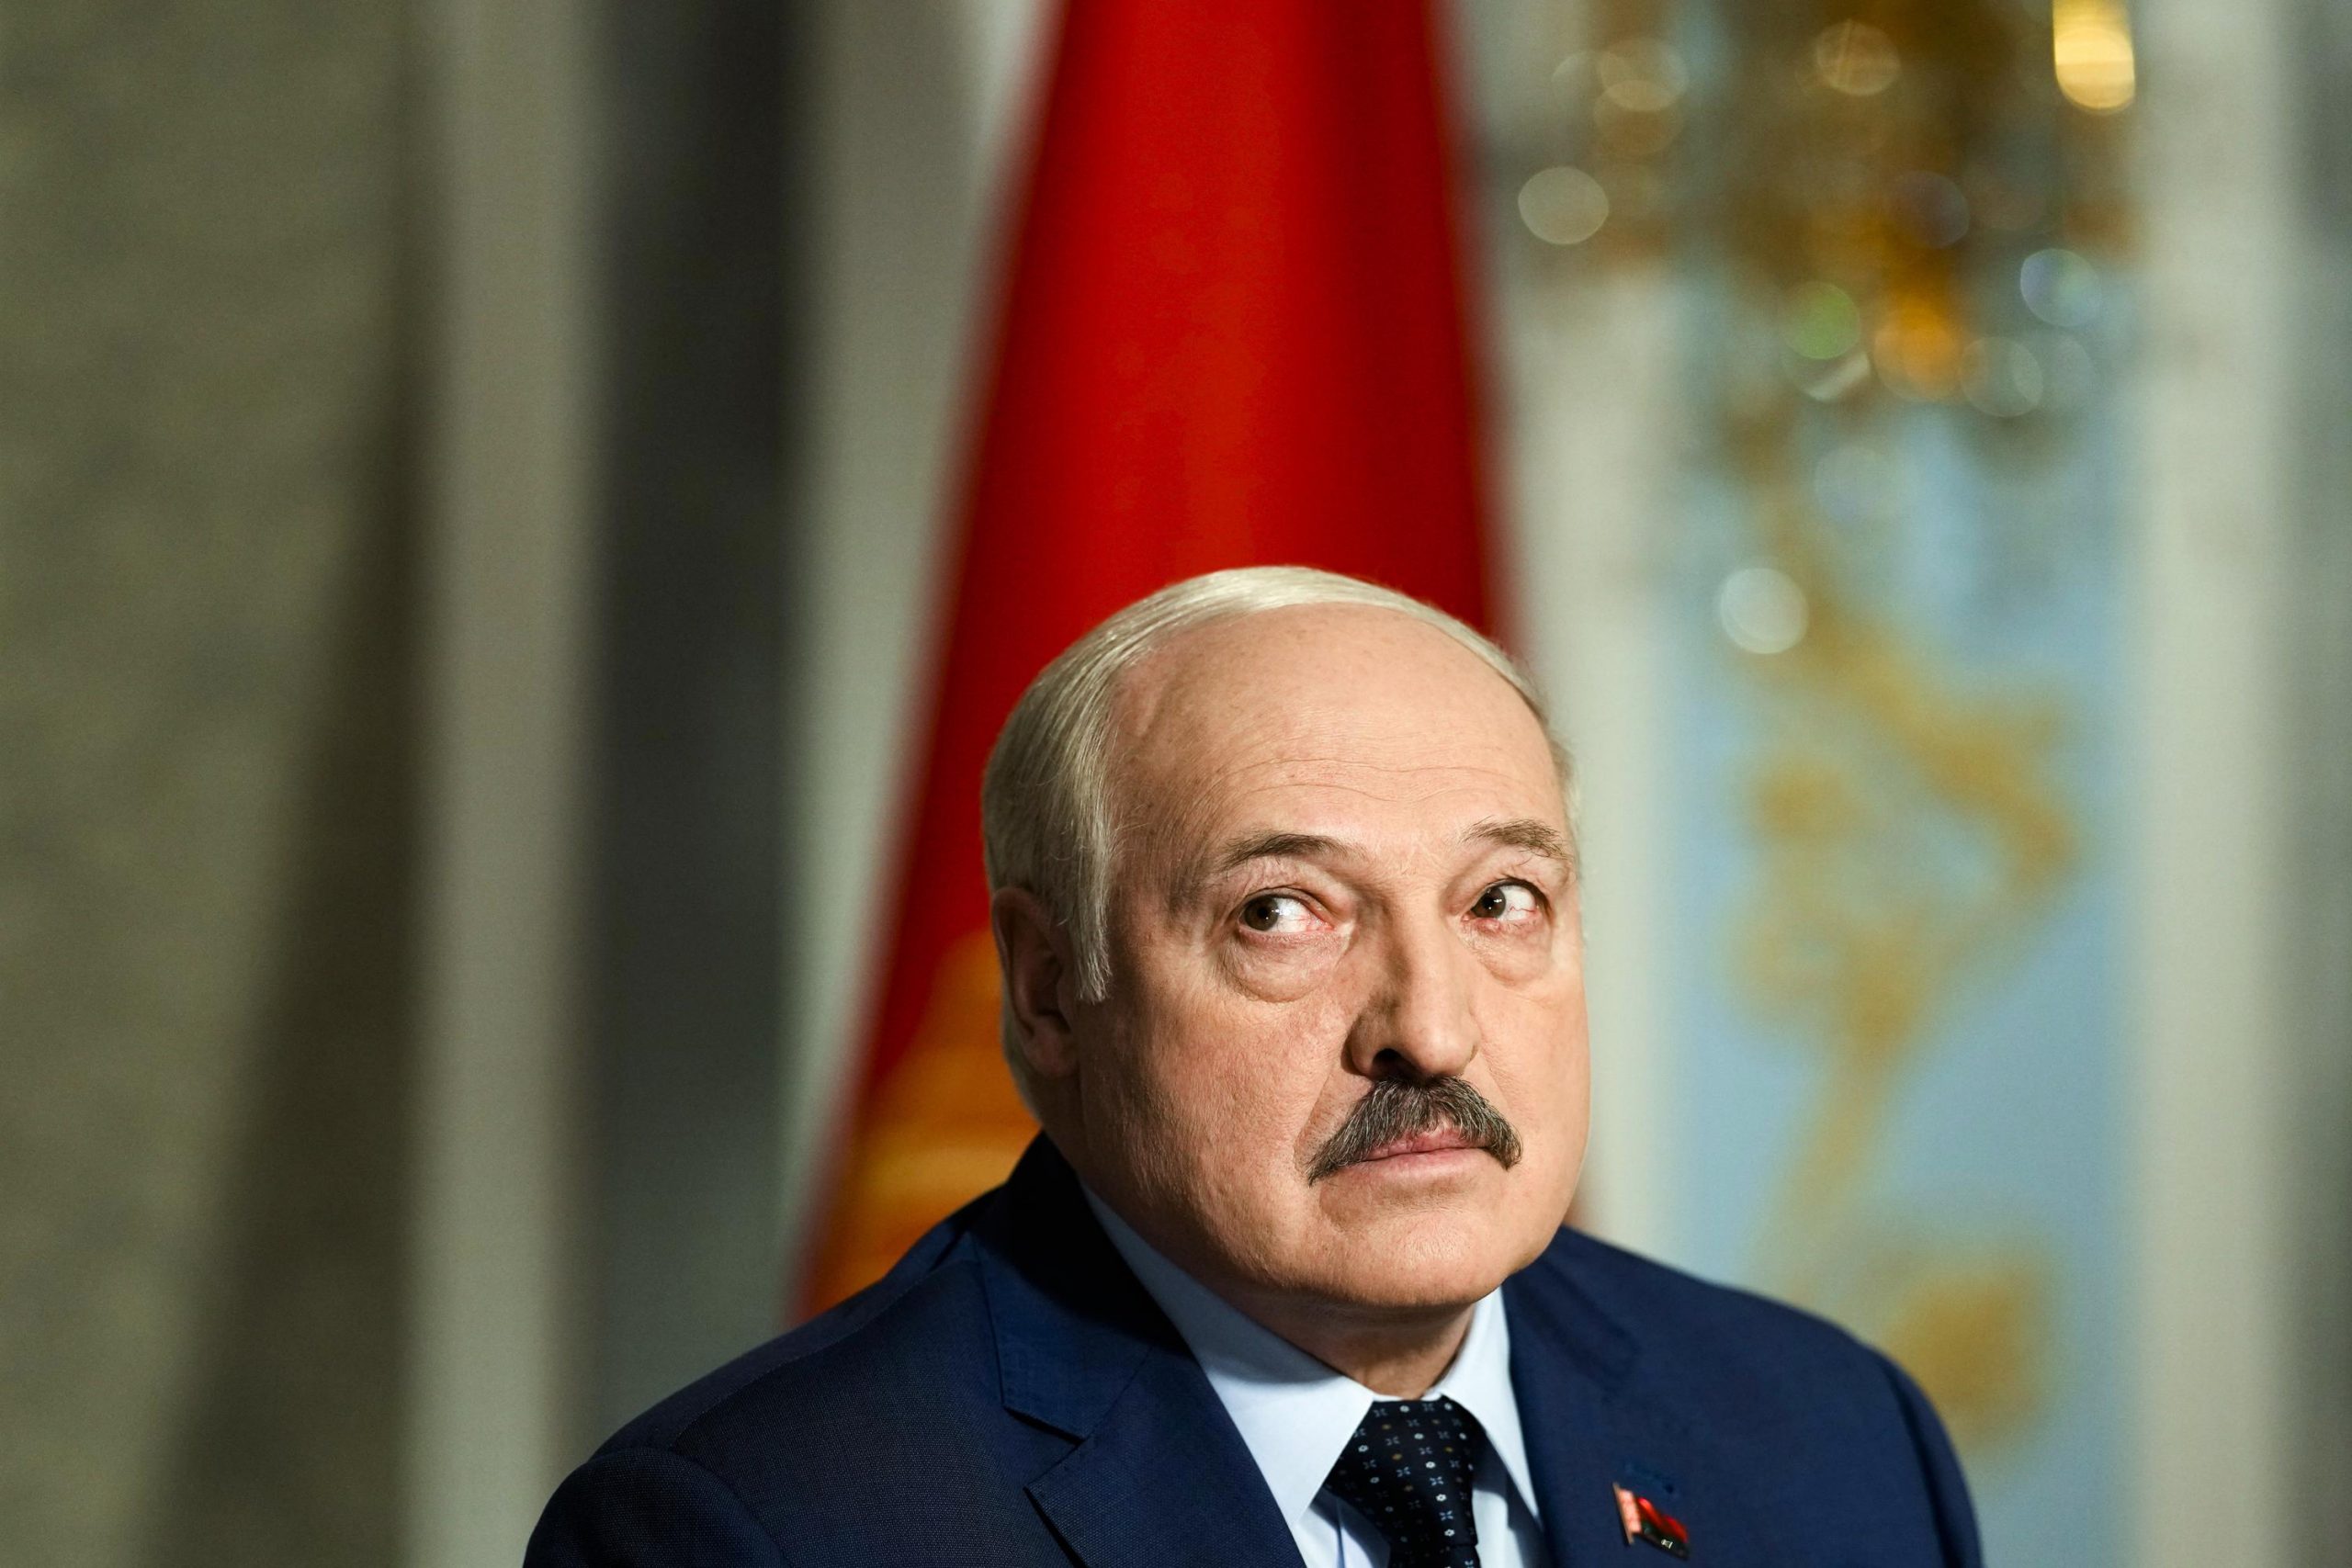 Lideri bjellorus, Alyaksandr Lukashenko. Foto: AP